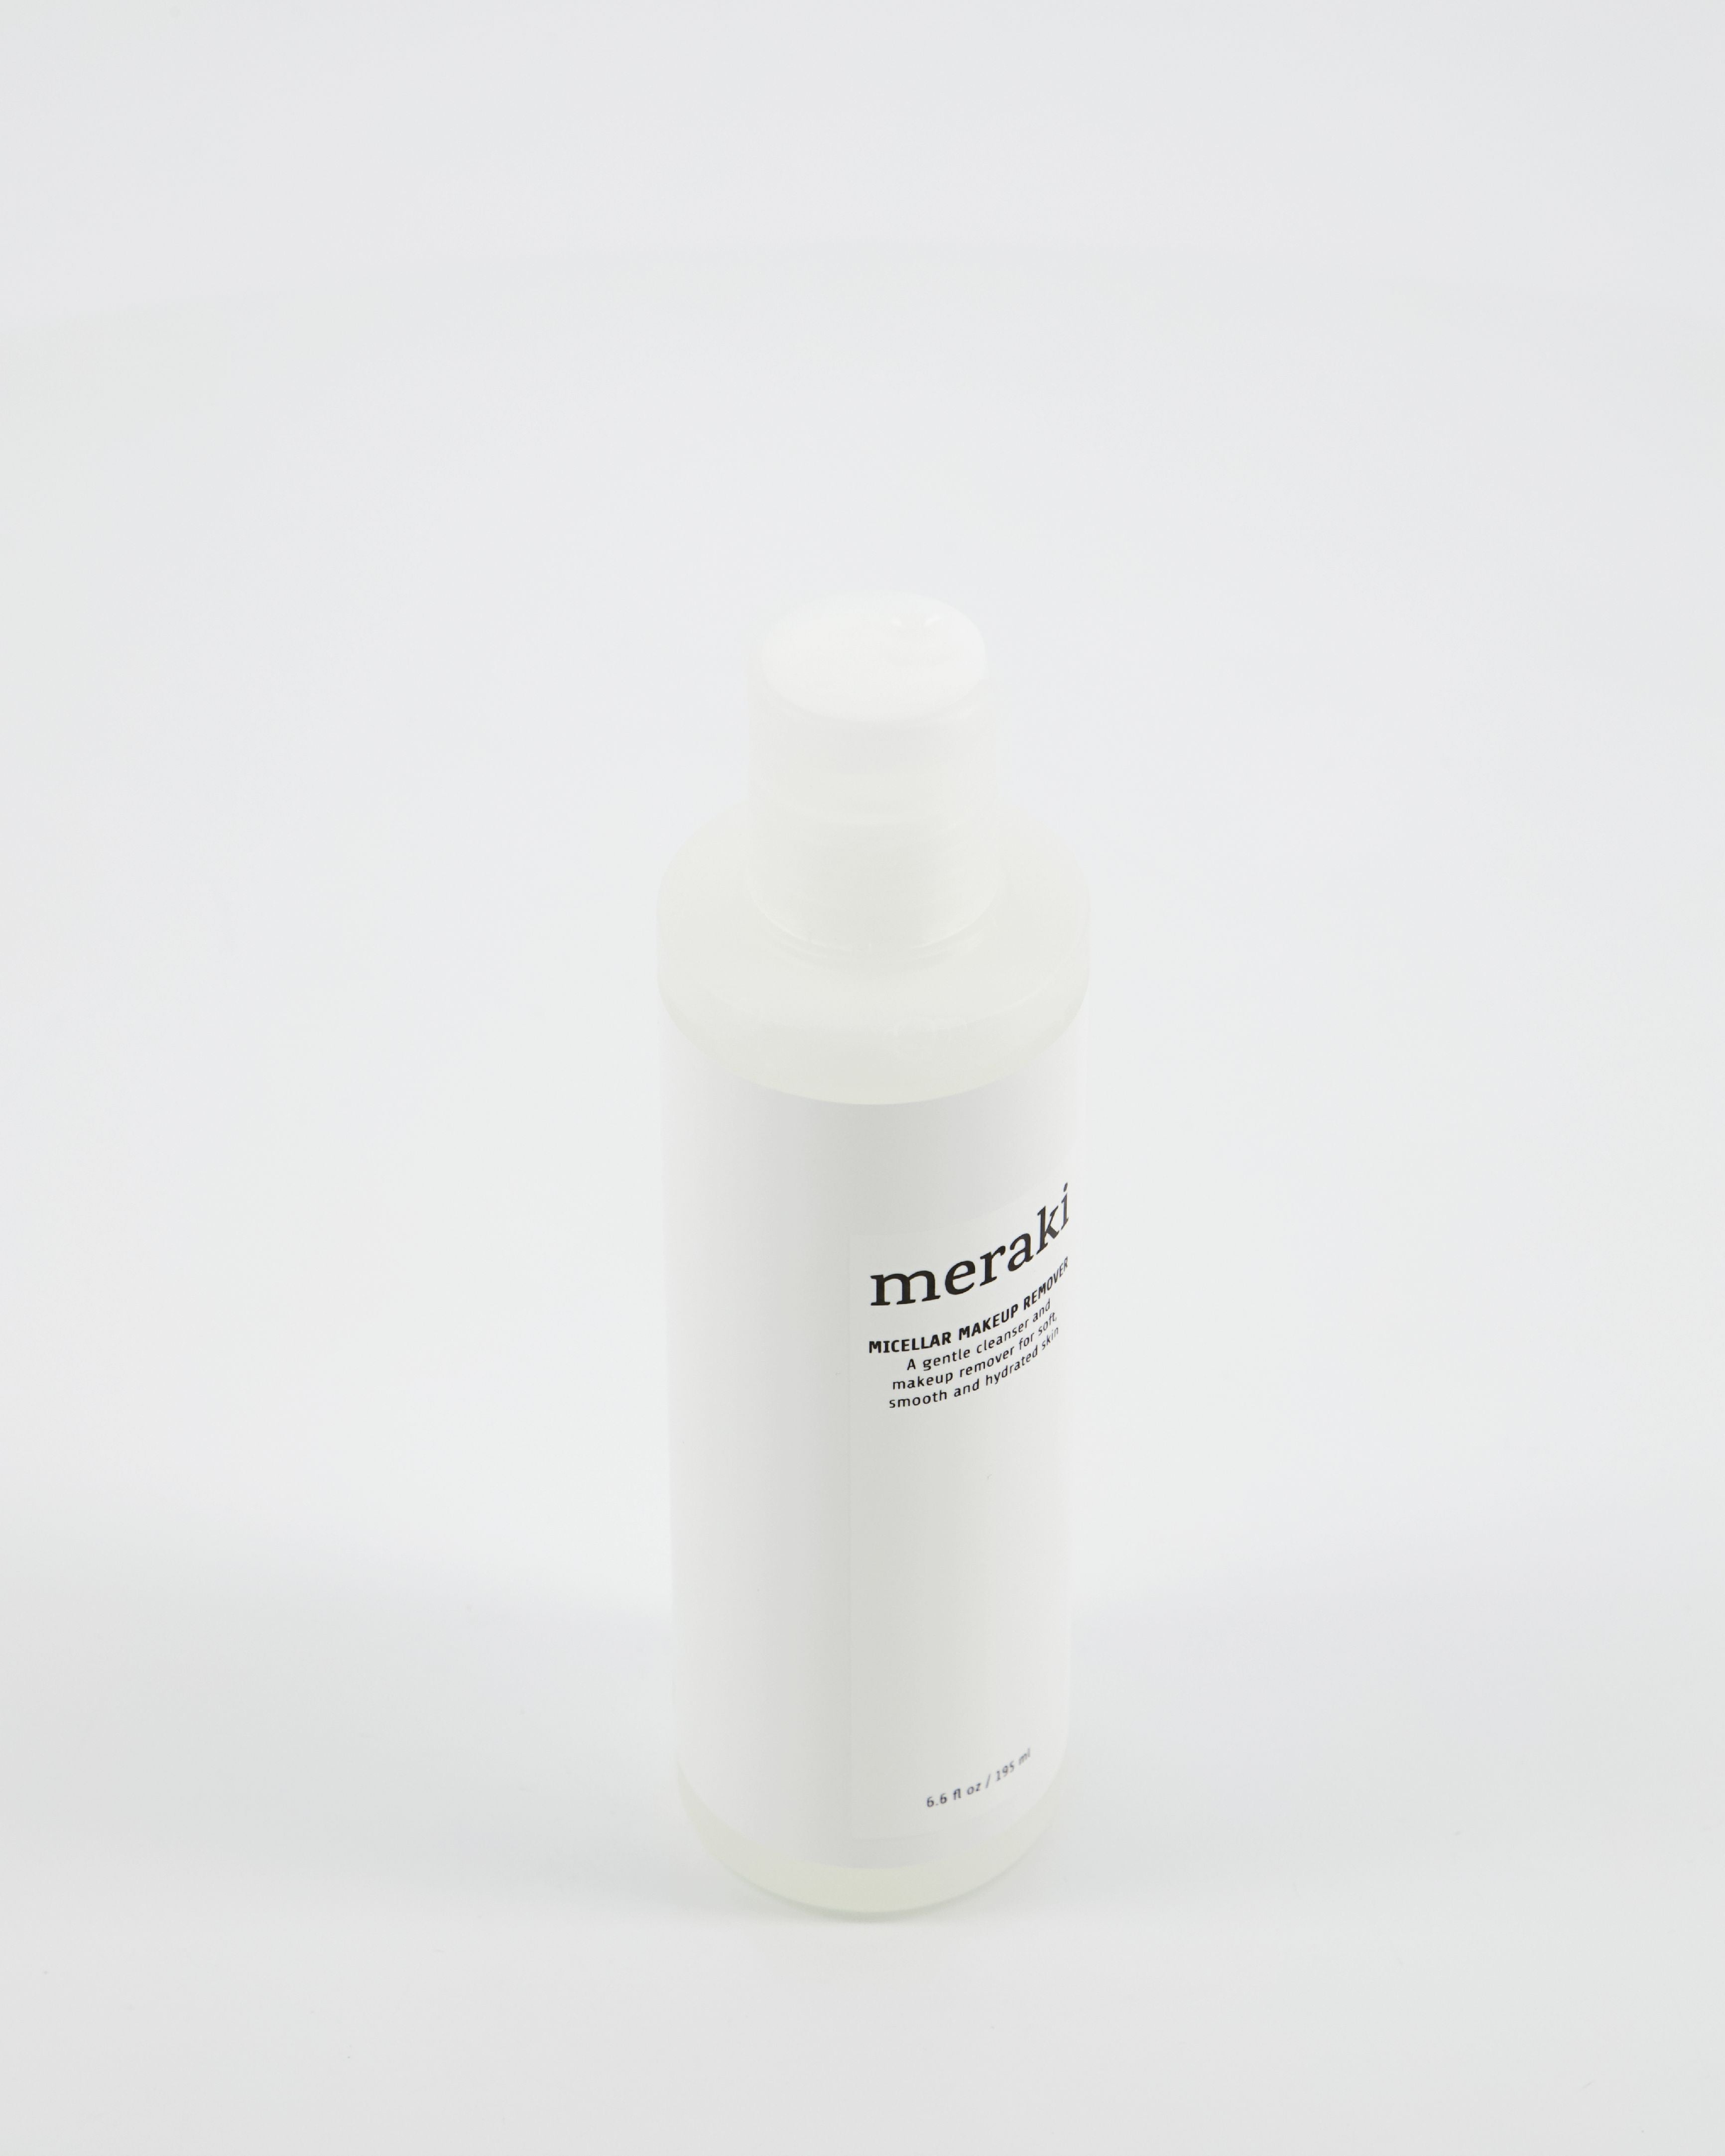 Remover de maquillage micellaire Meraki 200 ml